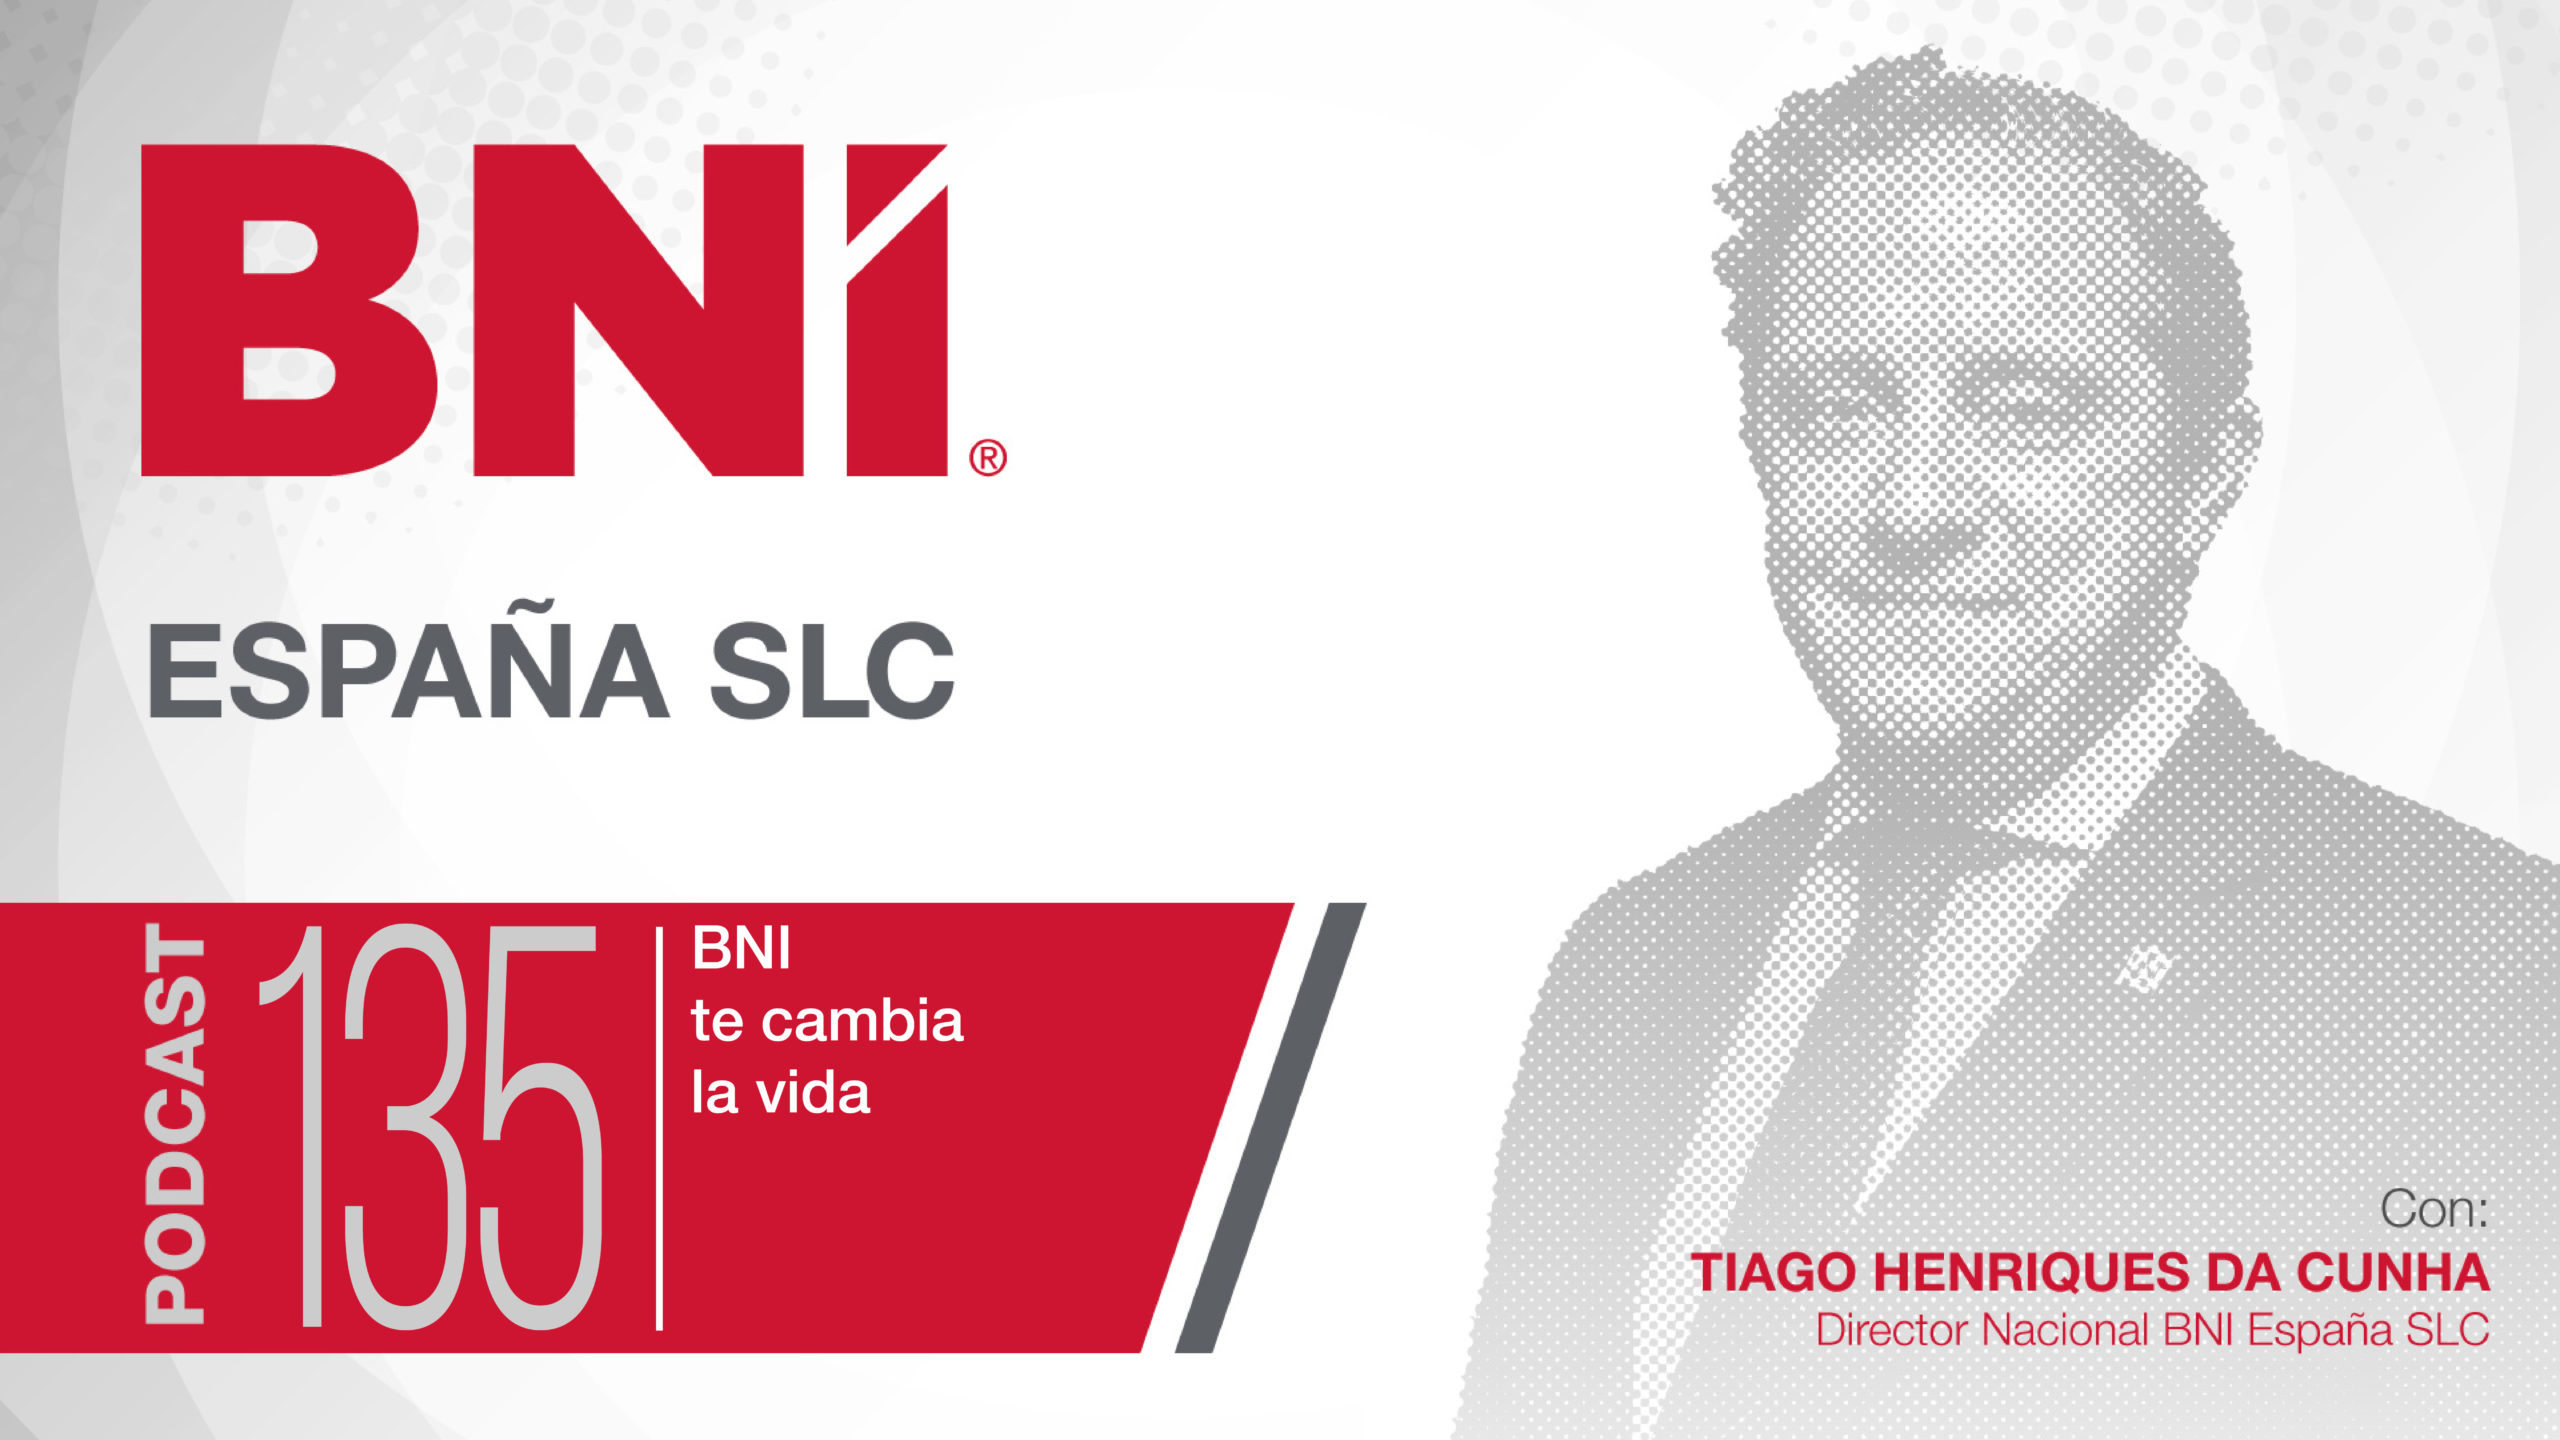 Tiago Henriques Da Cunha Director Nacional BNI España - Podcast 135